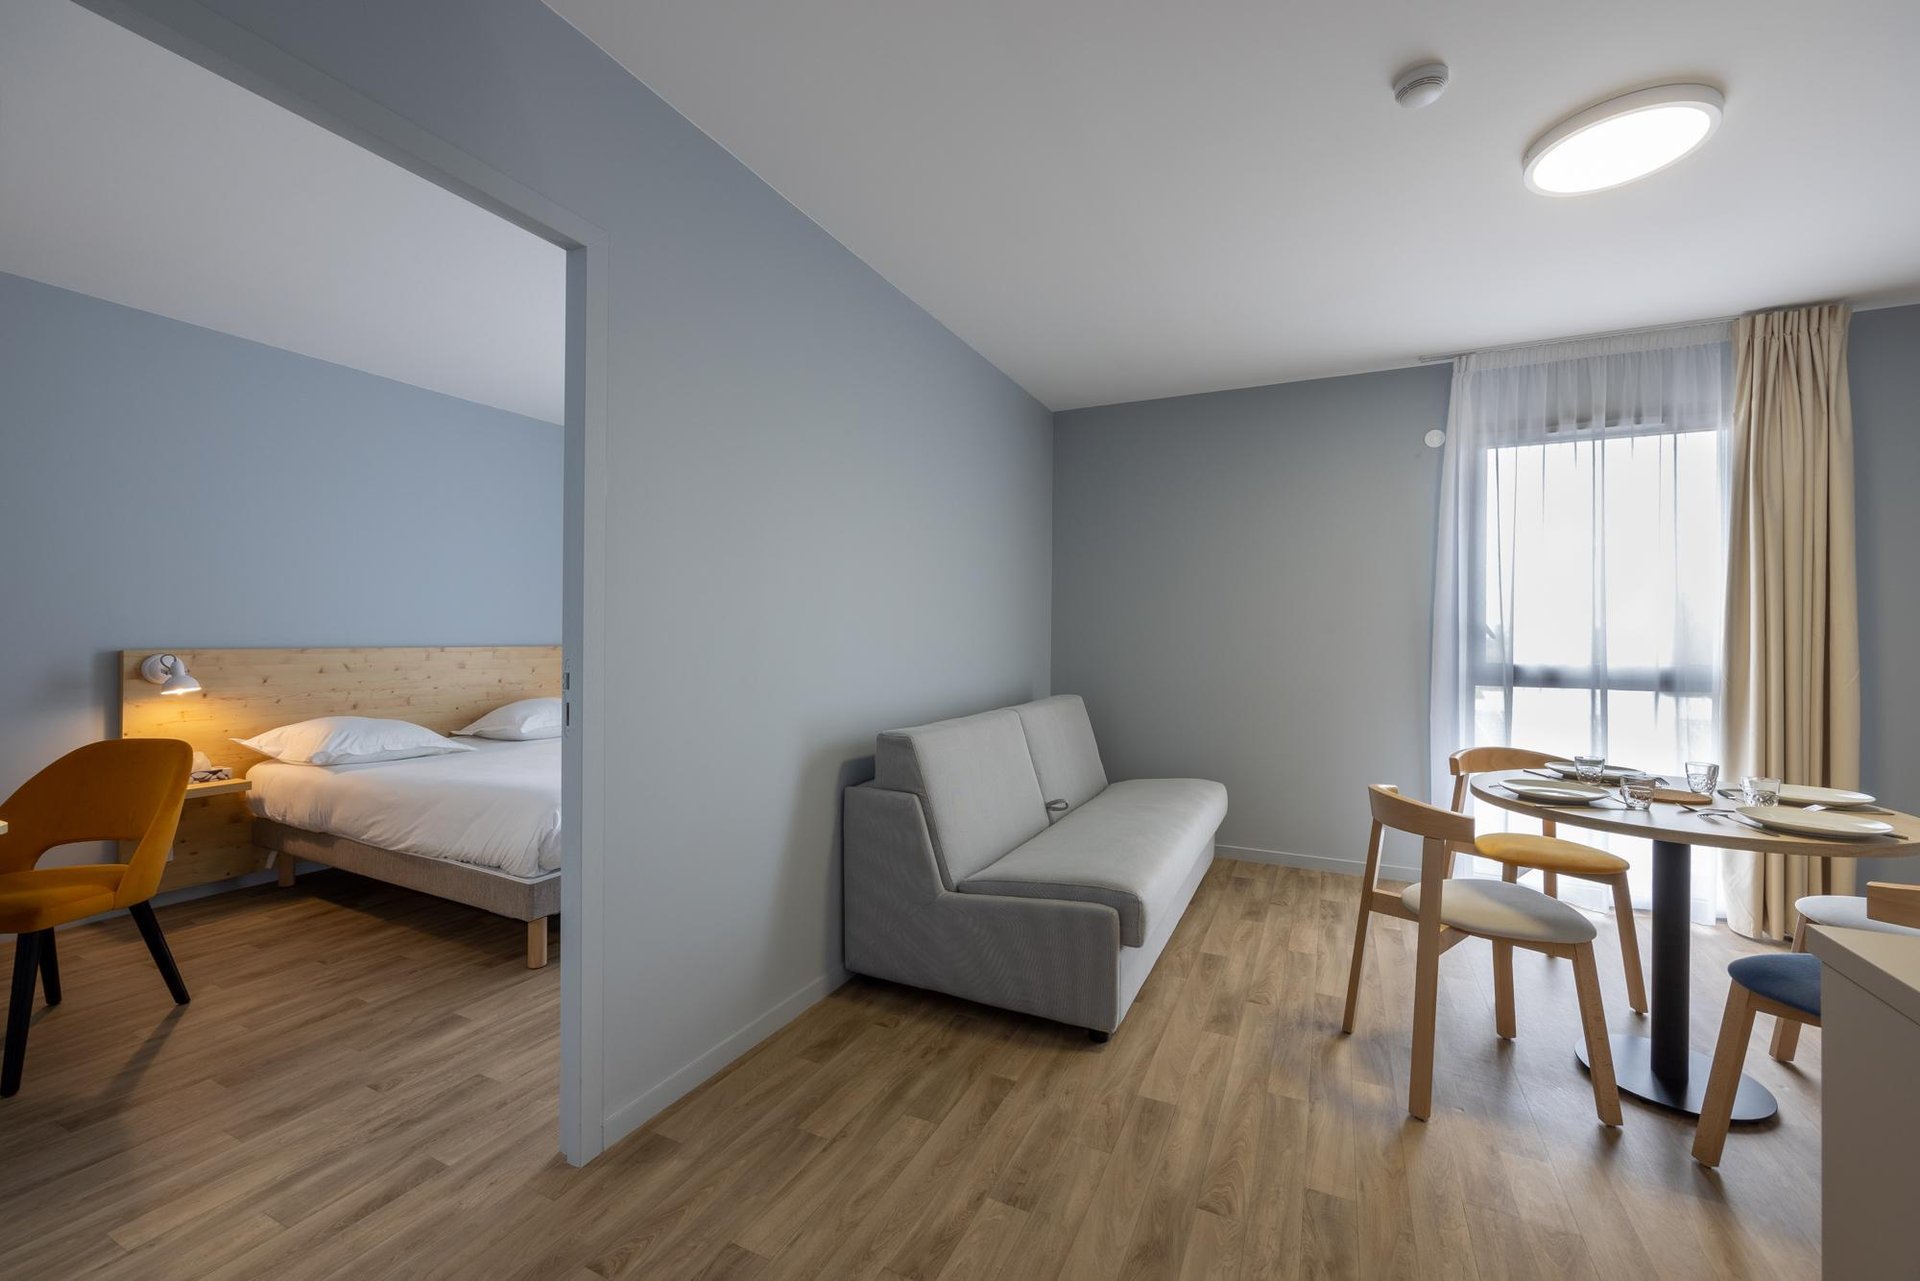 Le Relais des Deux Mers | 3 star hotel Lot-et-Garonne | Family flat